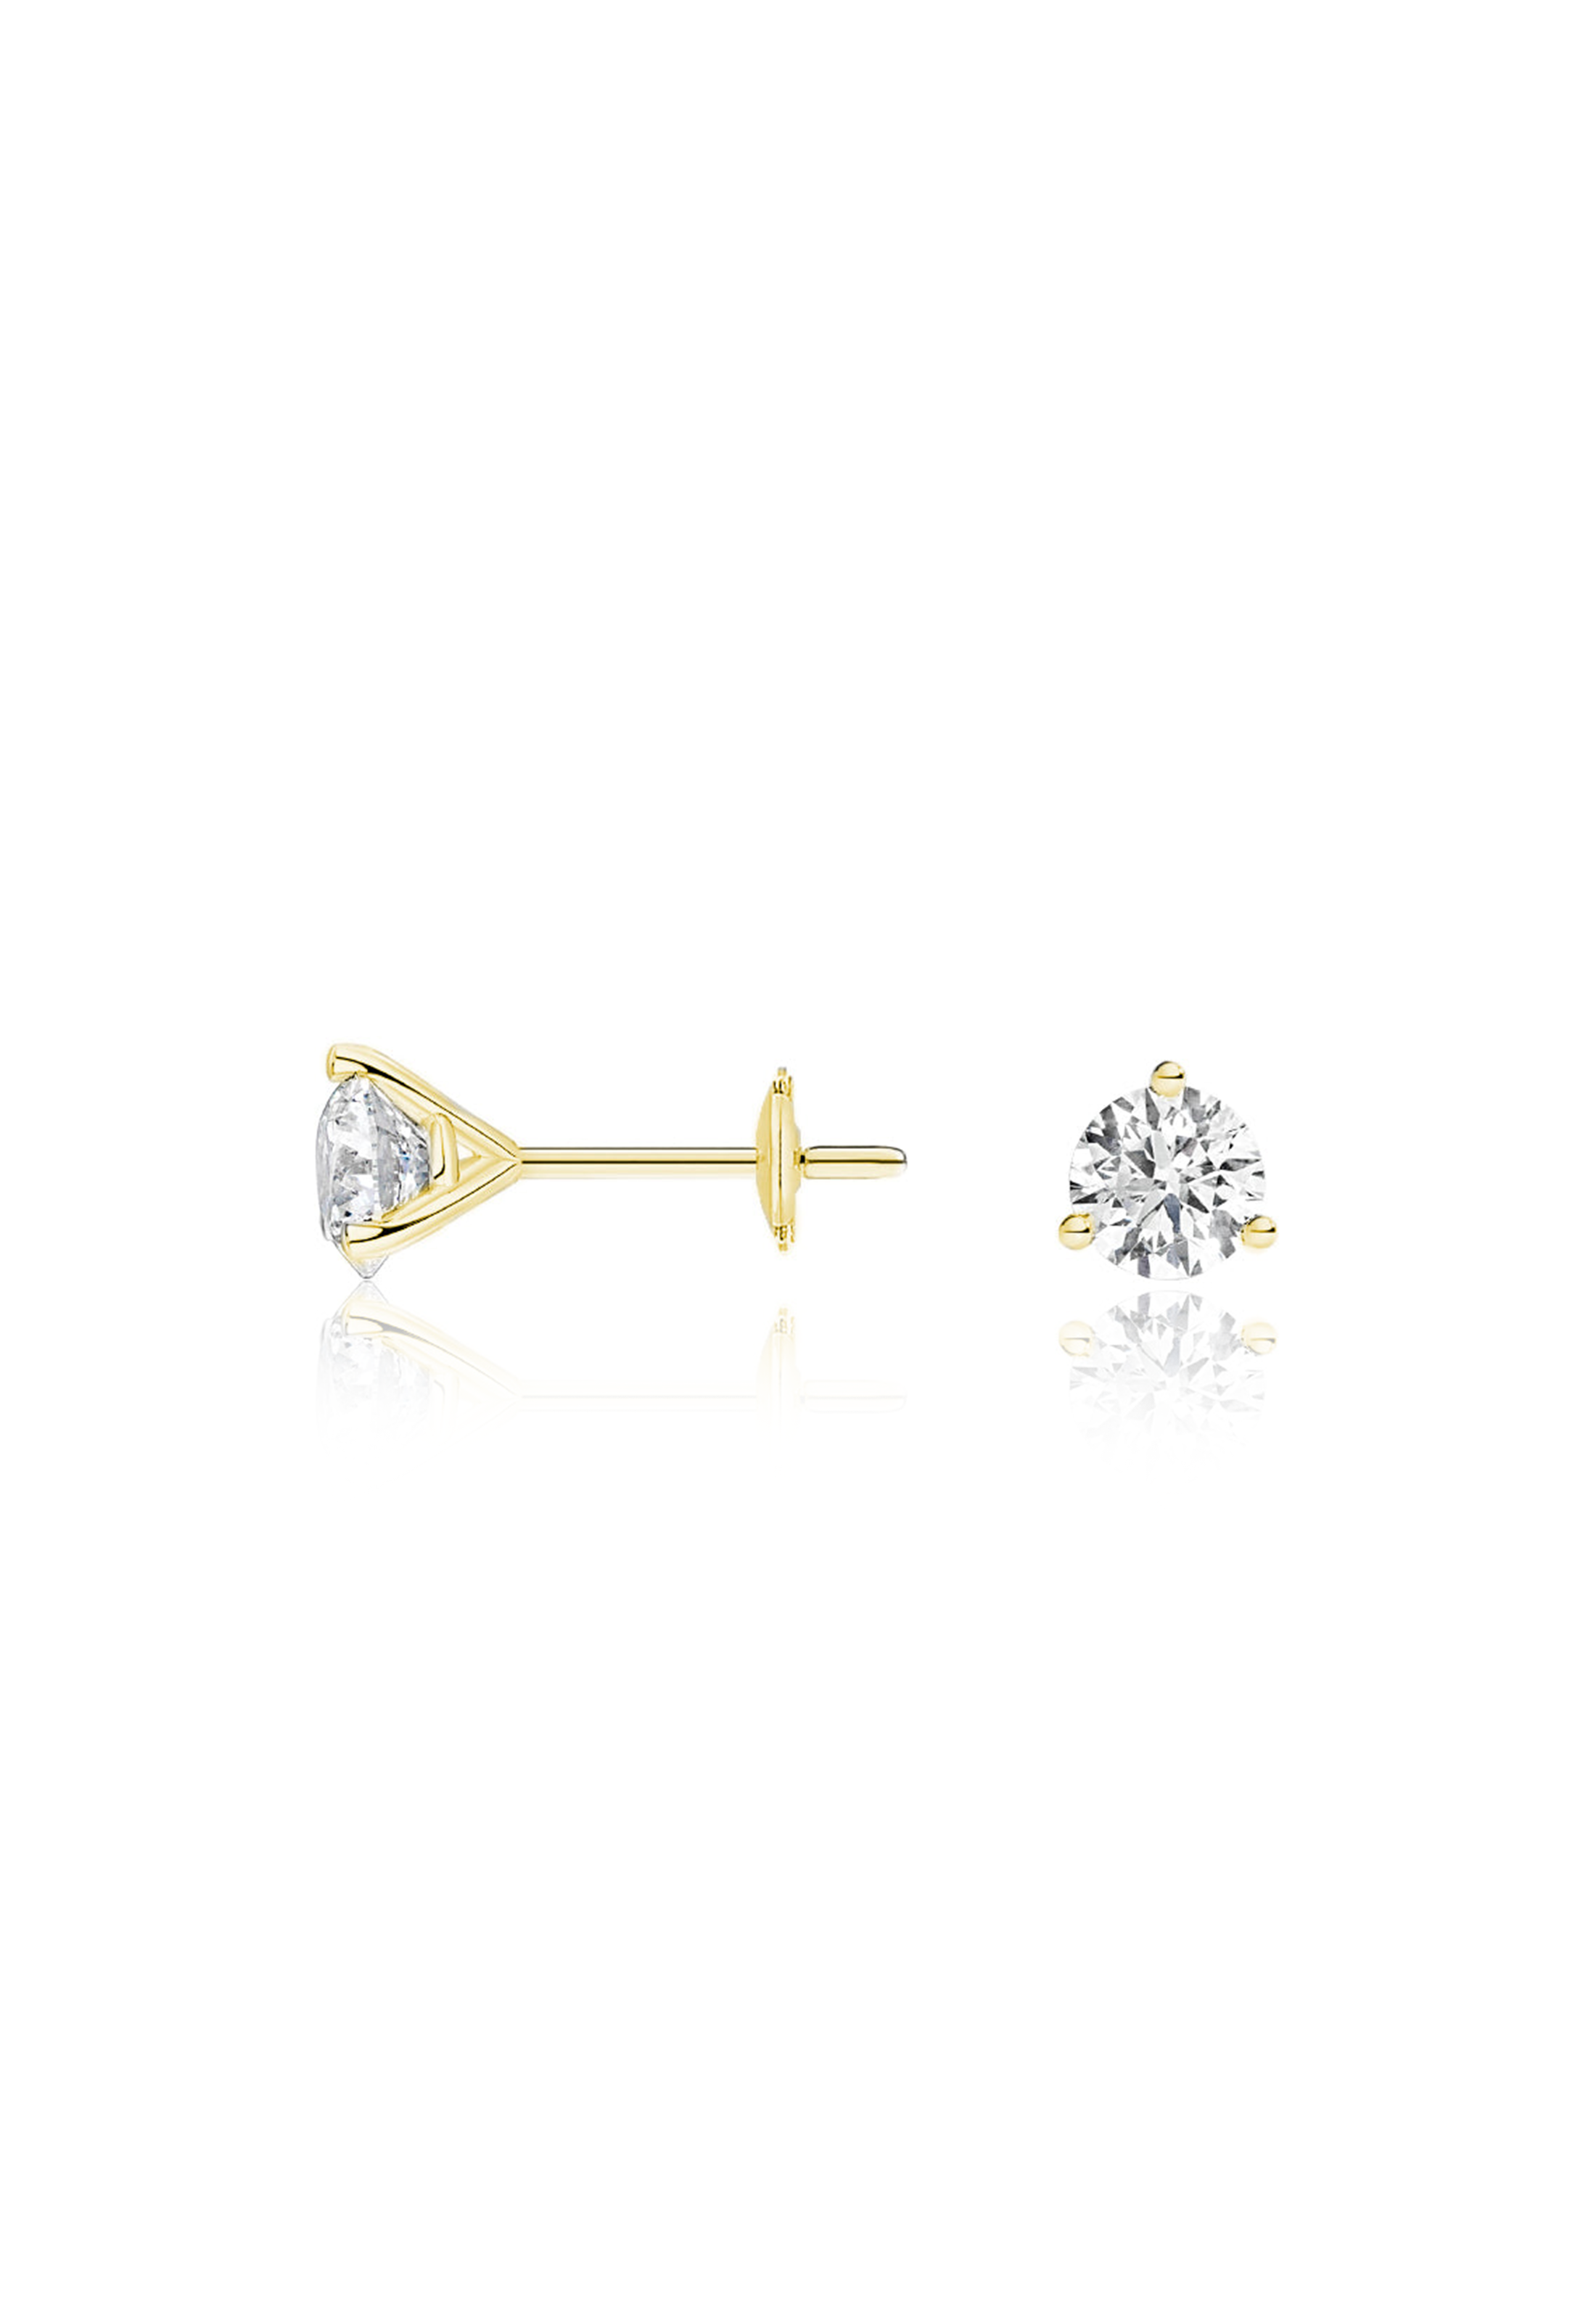 Round Cut Diamond Earrings 1.0 Carat (3-Prongs) - Fenom & Co.